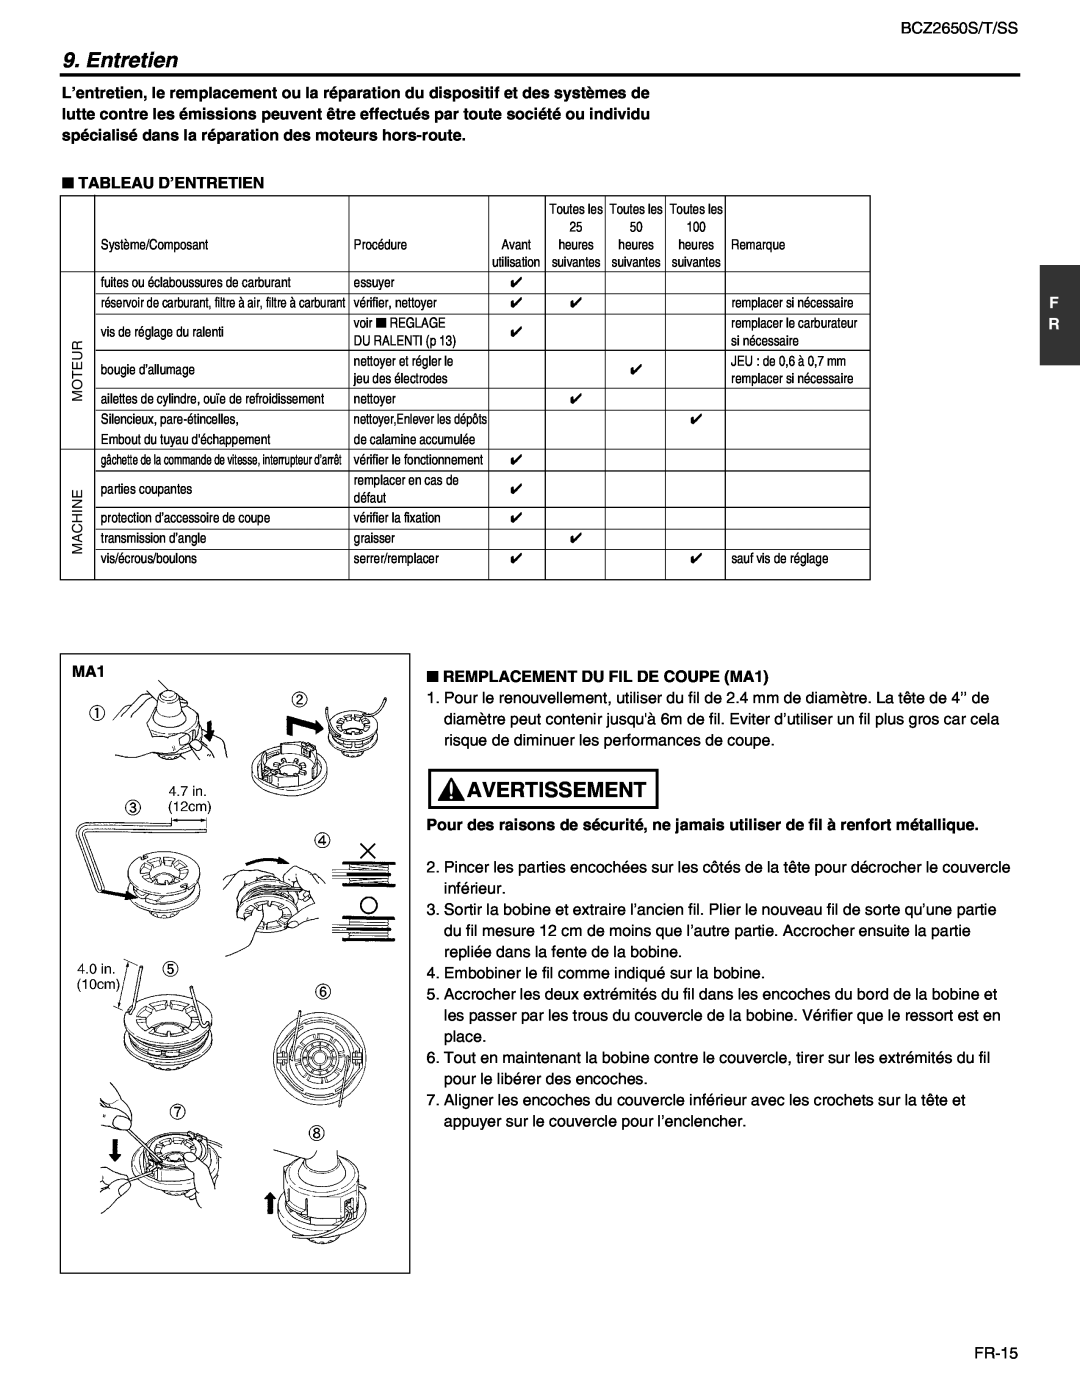 RedMax BCZ2650SS, BCZ2650T manual Avertissement, Tableau D’Entretien, REMPLACEMENT DU FIL DE COUPE MA1 